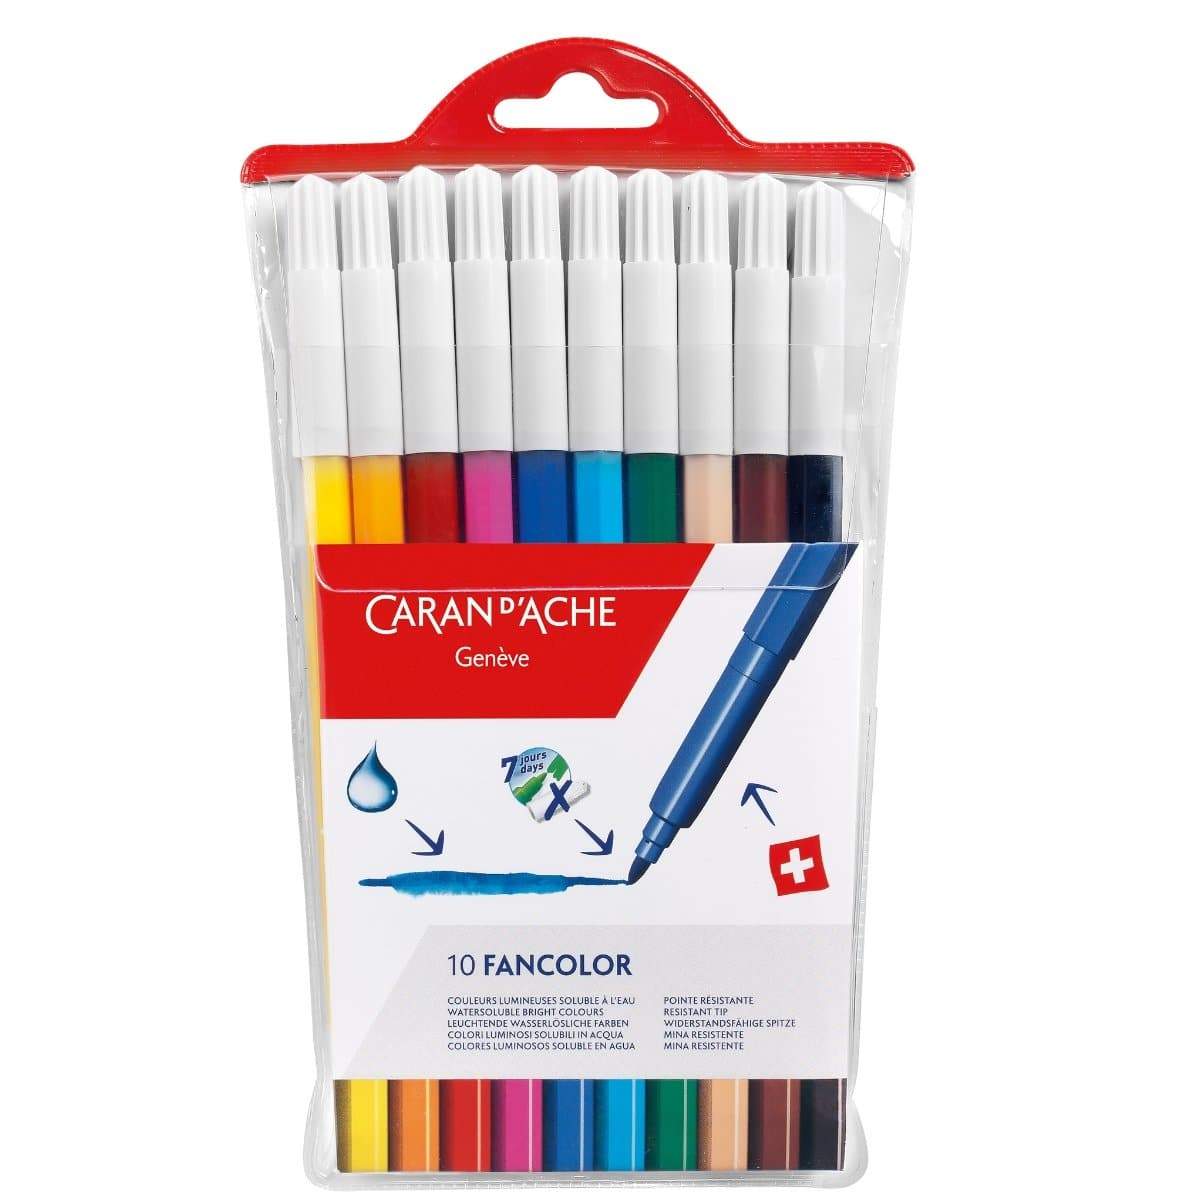 CARAN D'ACHE Fancolor Large Fibre Pens 10 Colours